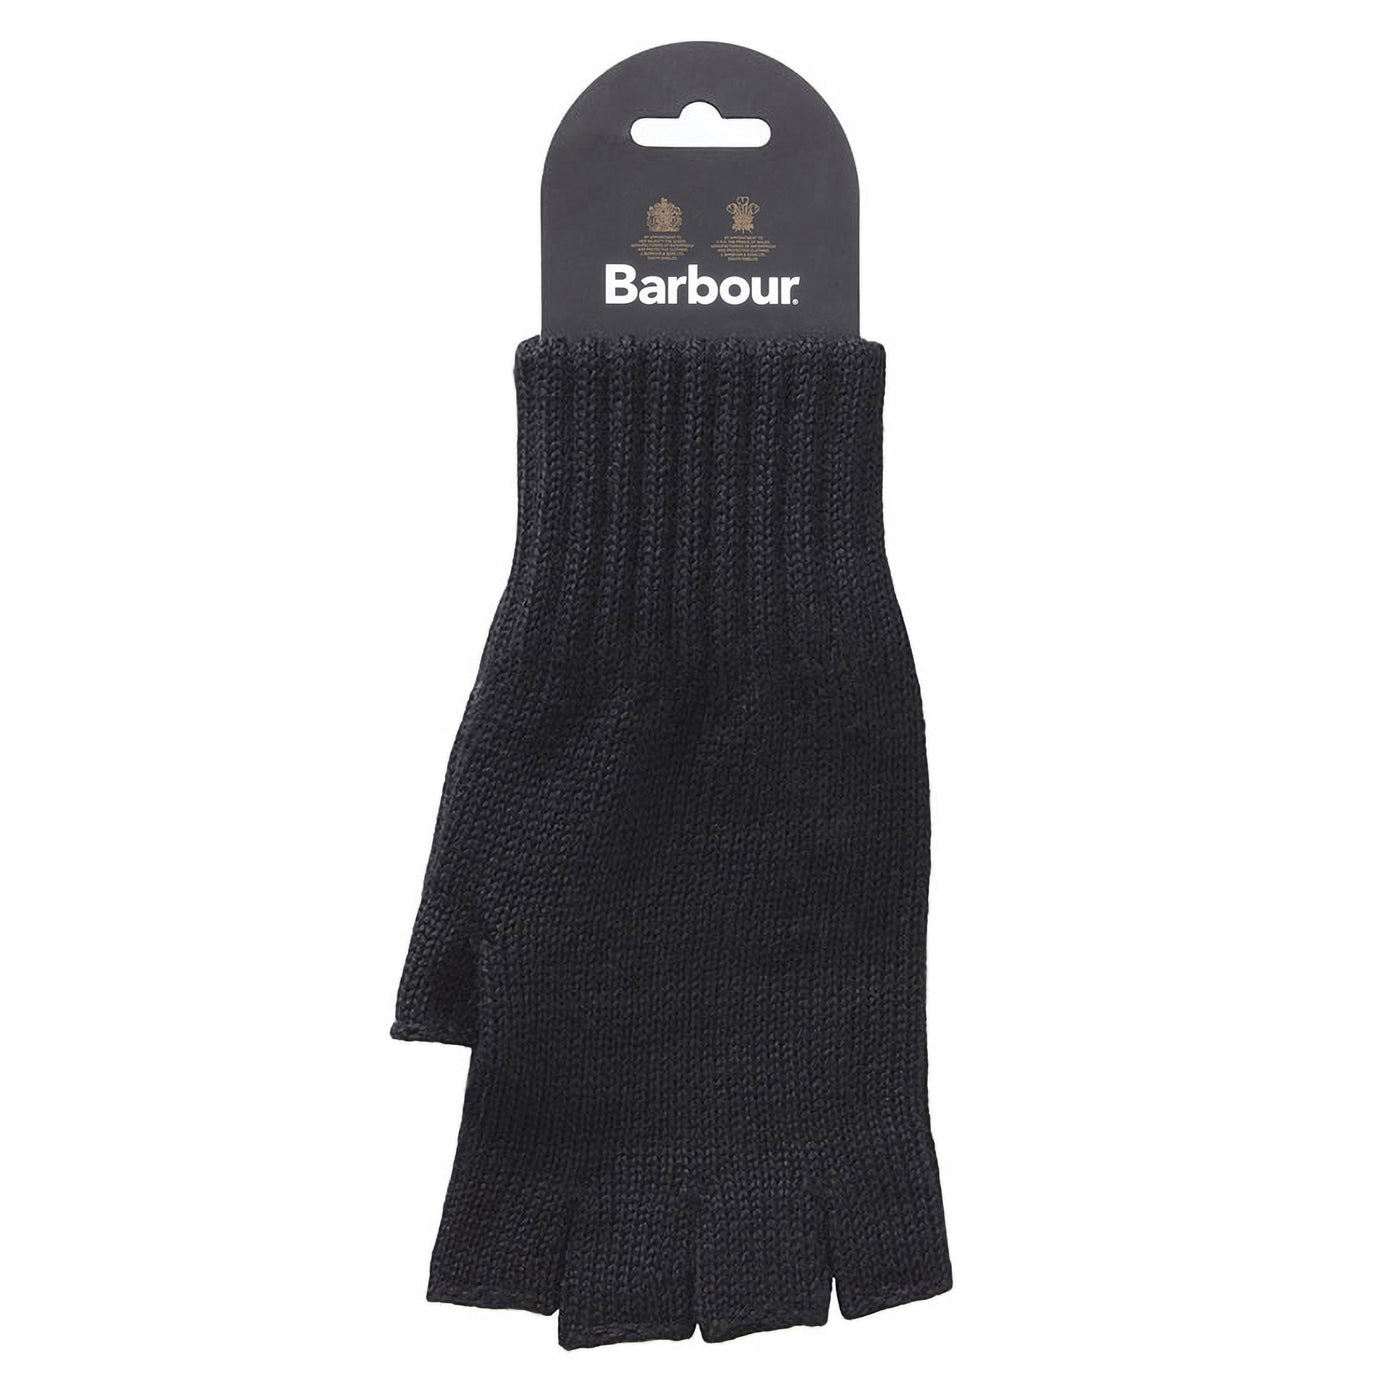 Barbour Fingerless Gloves Black Back